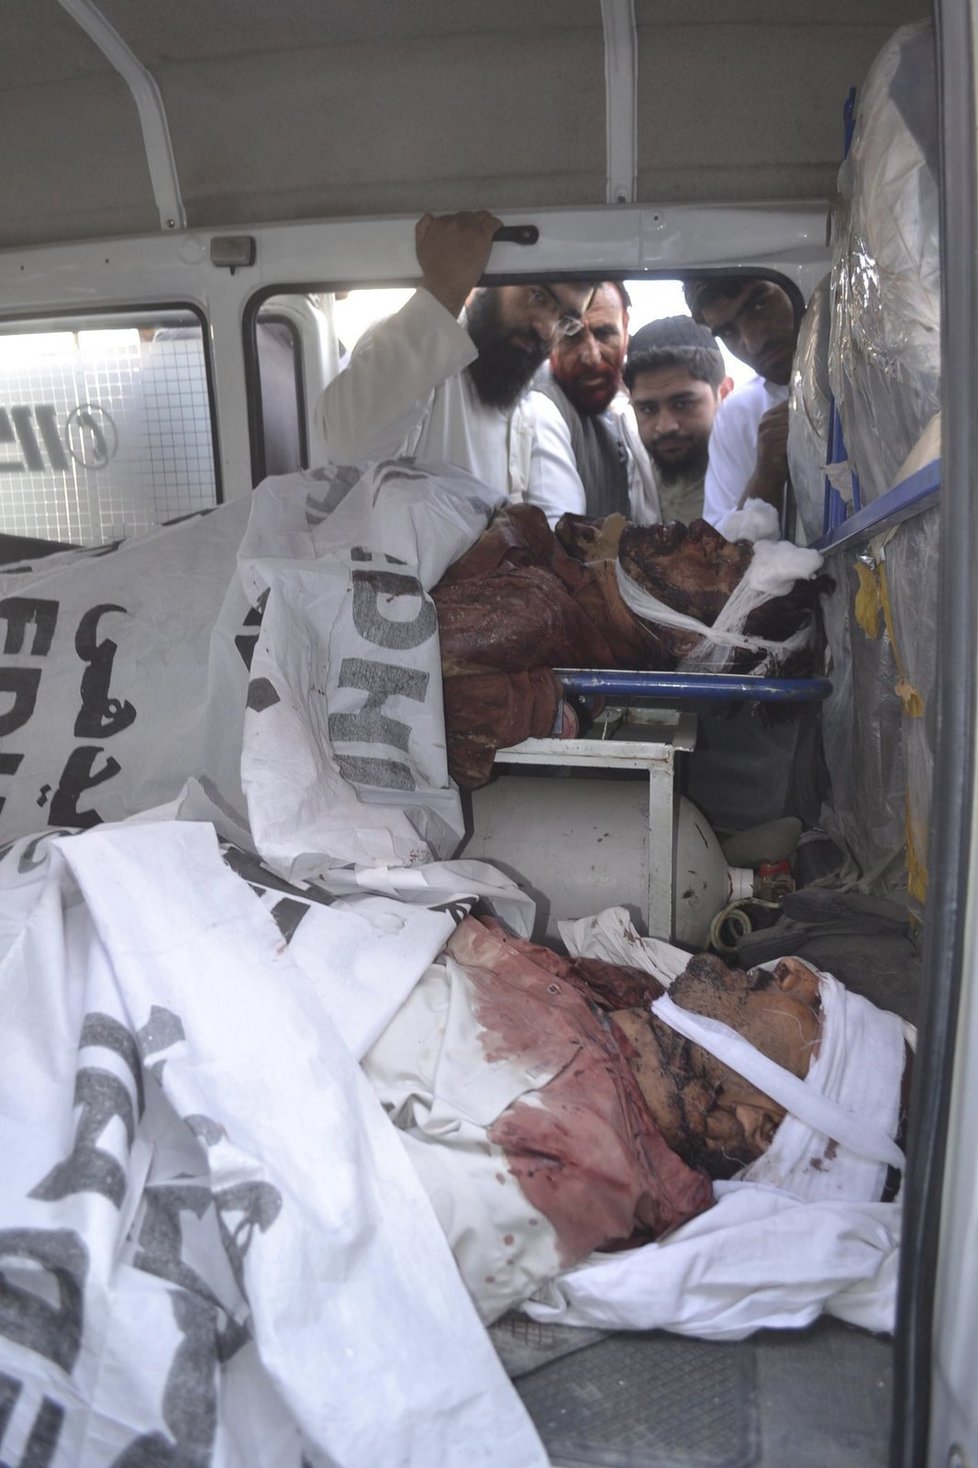 Ozbrojenci v Pákistánu přepadli autobus: Bylo zabito přinejmenším 19 lidí.